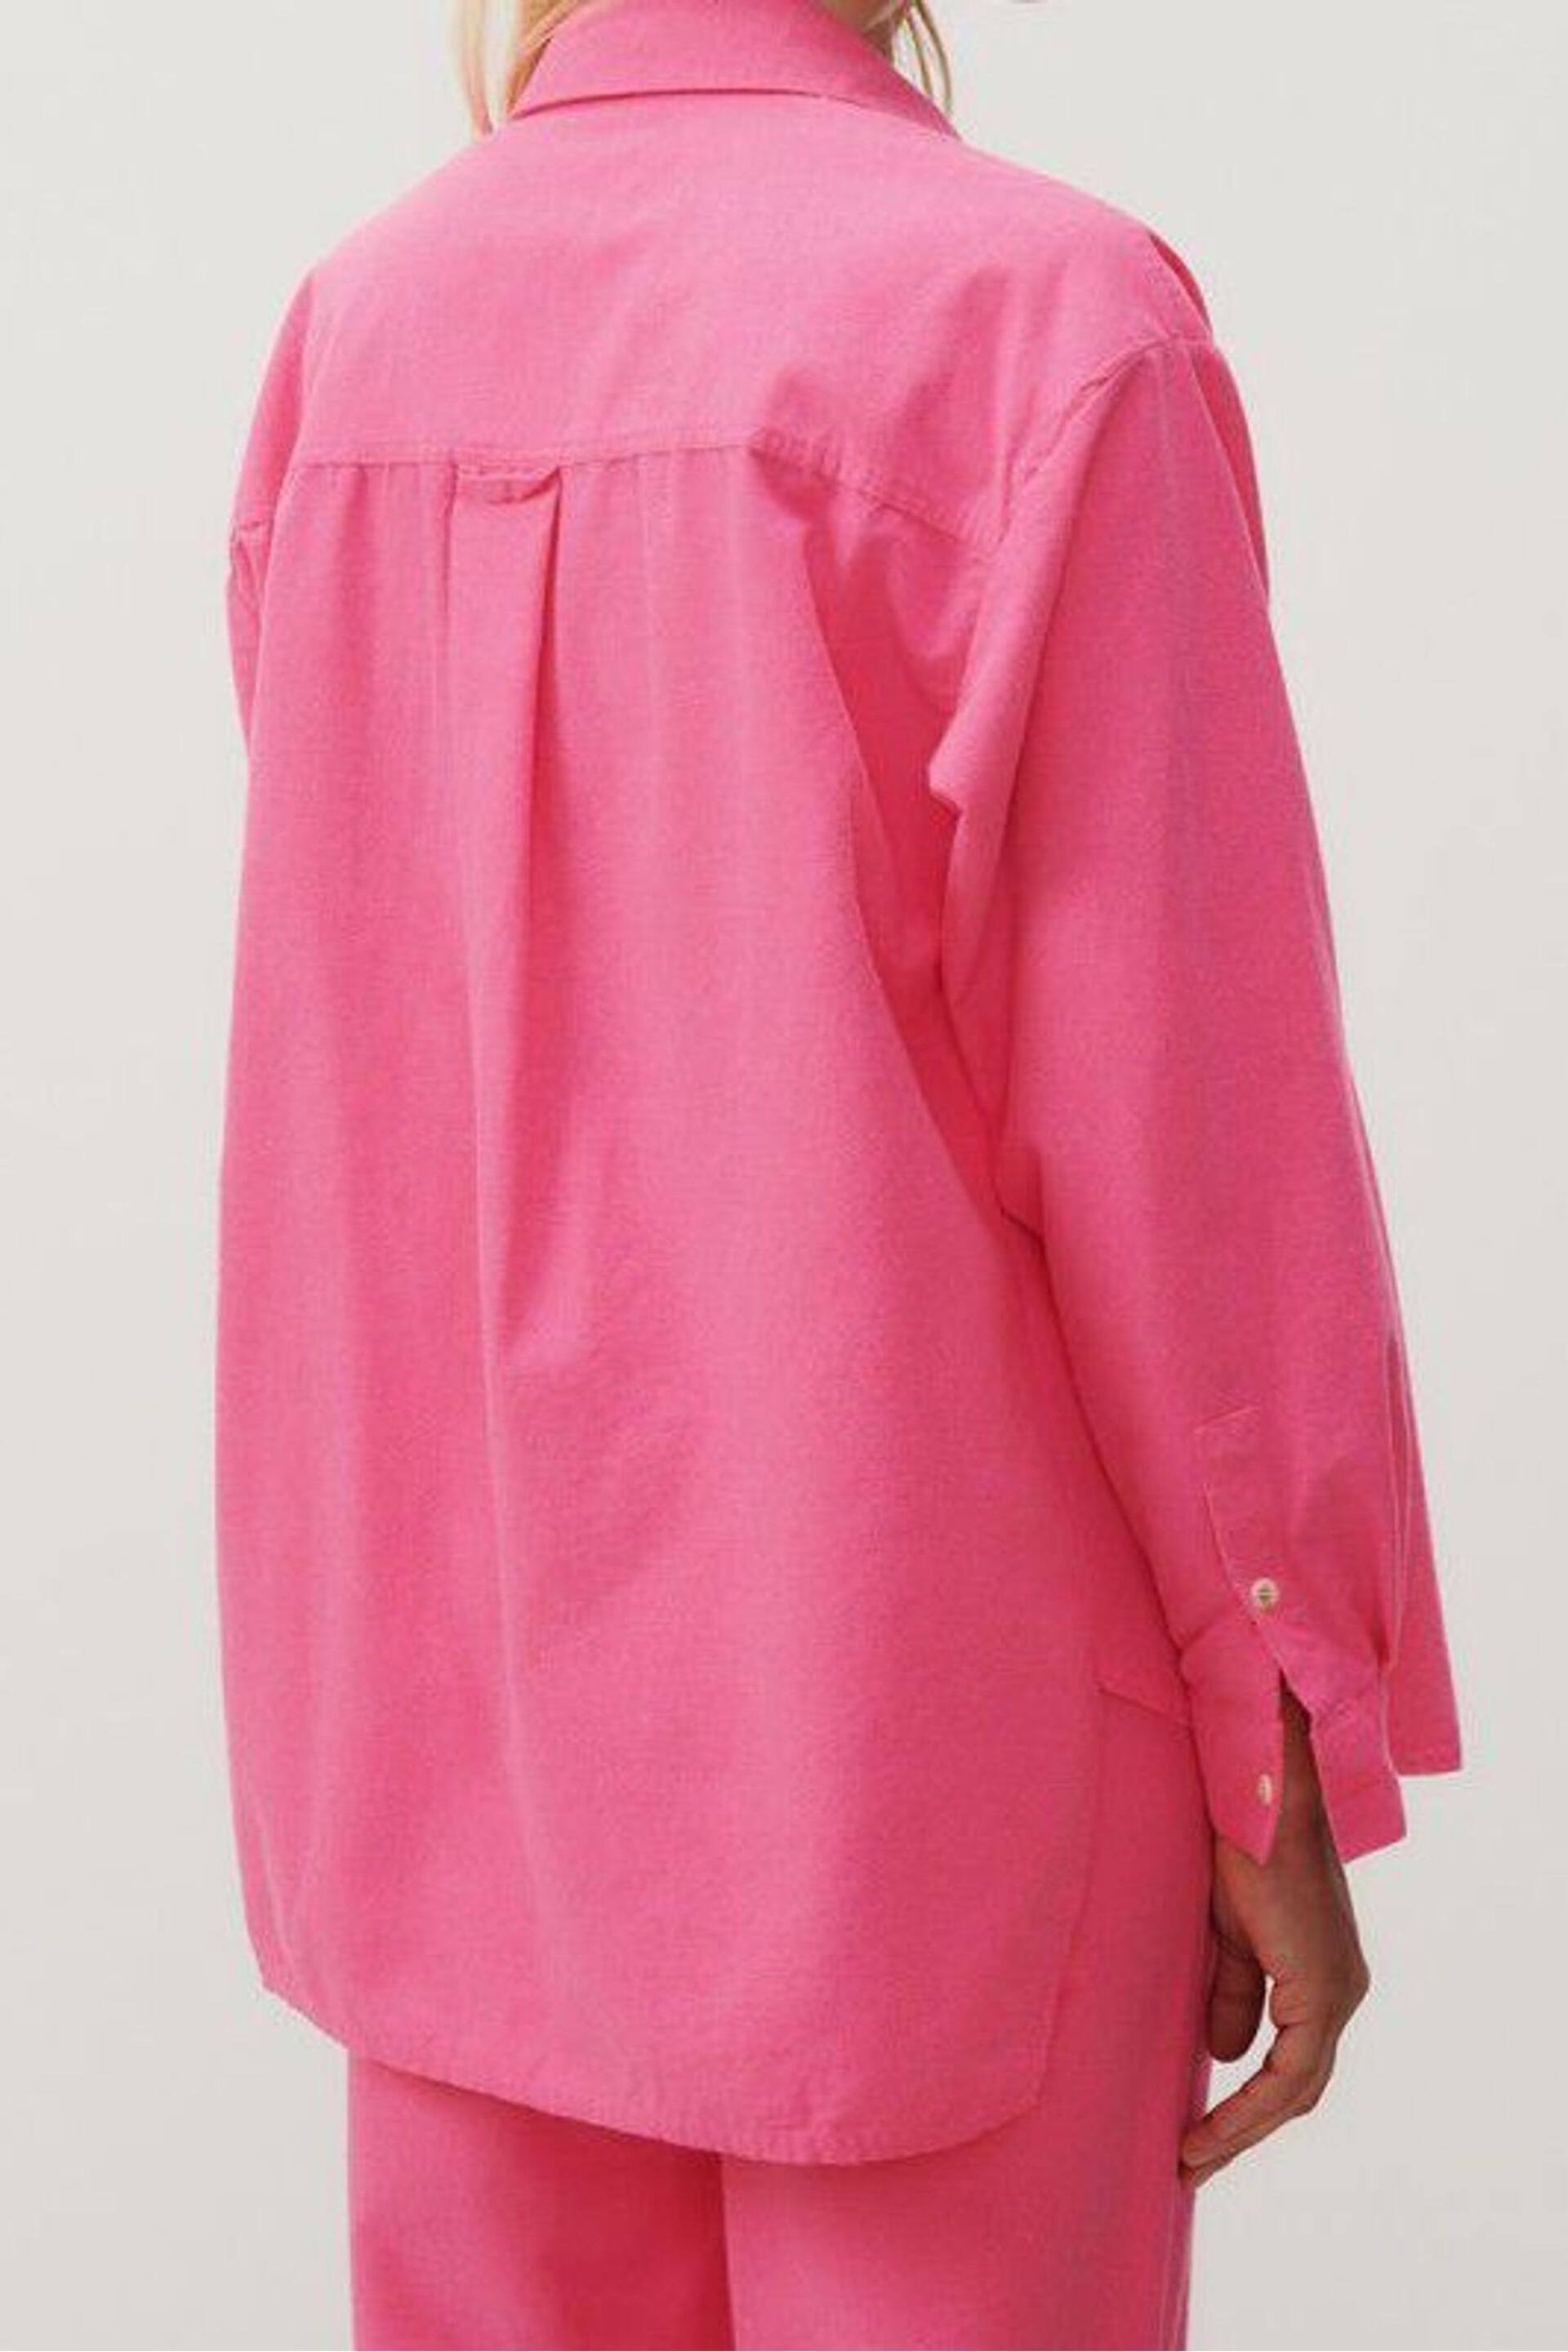 American Vintage Pink Dakota Shirt - Image 2 of 5